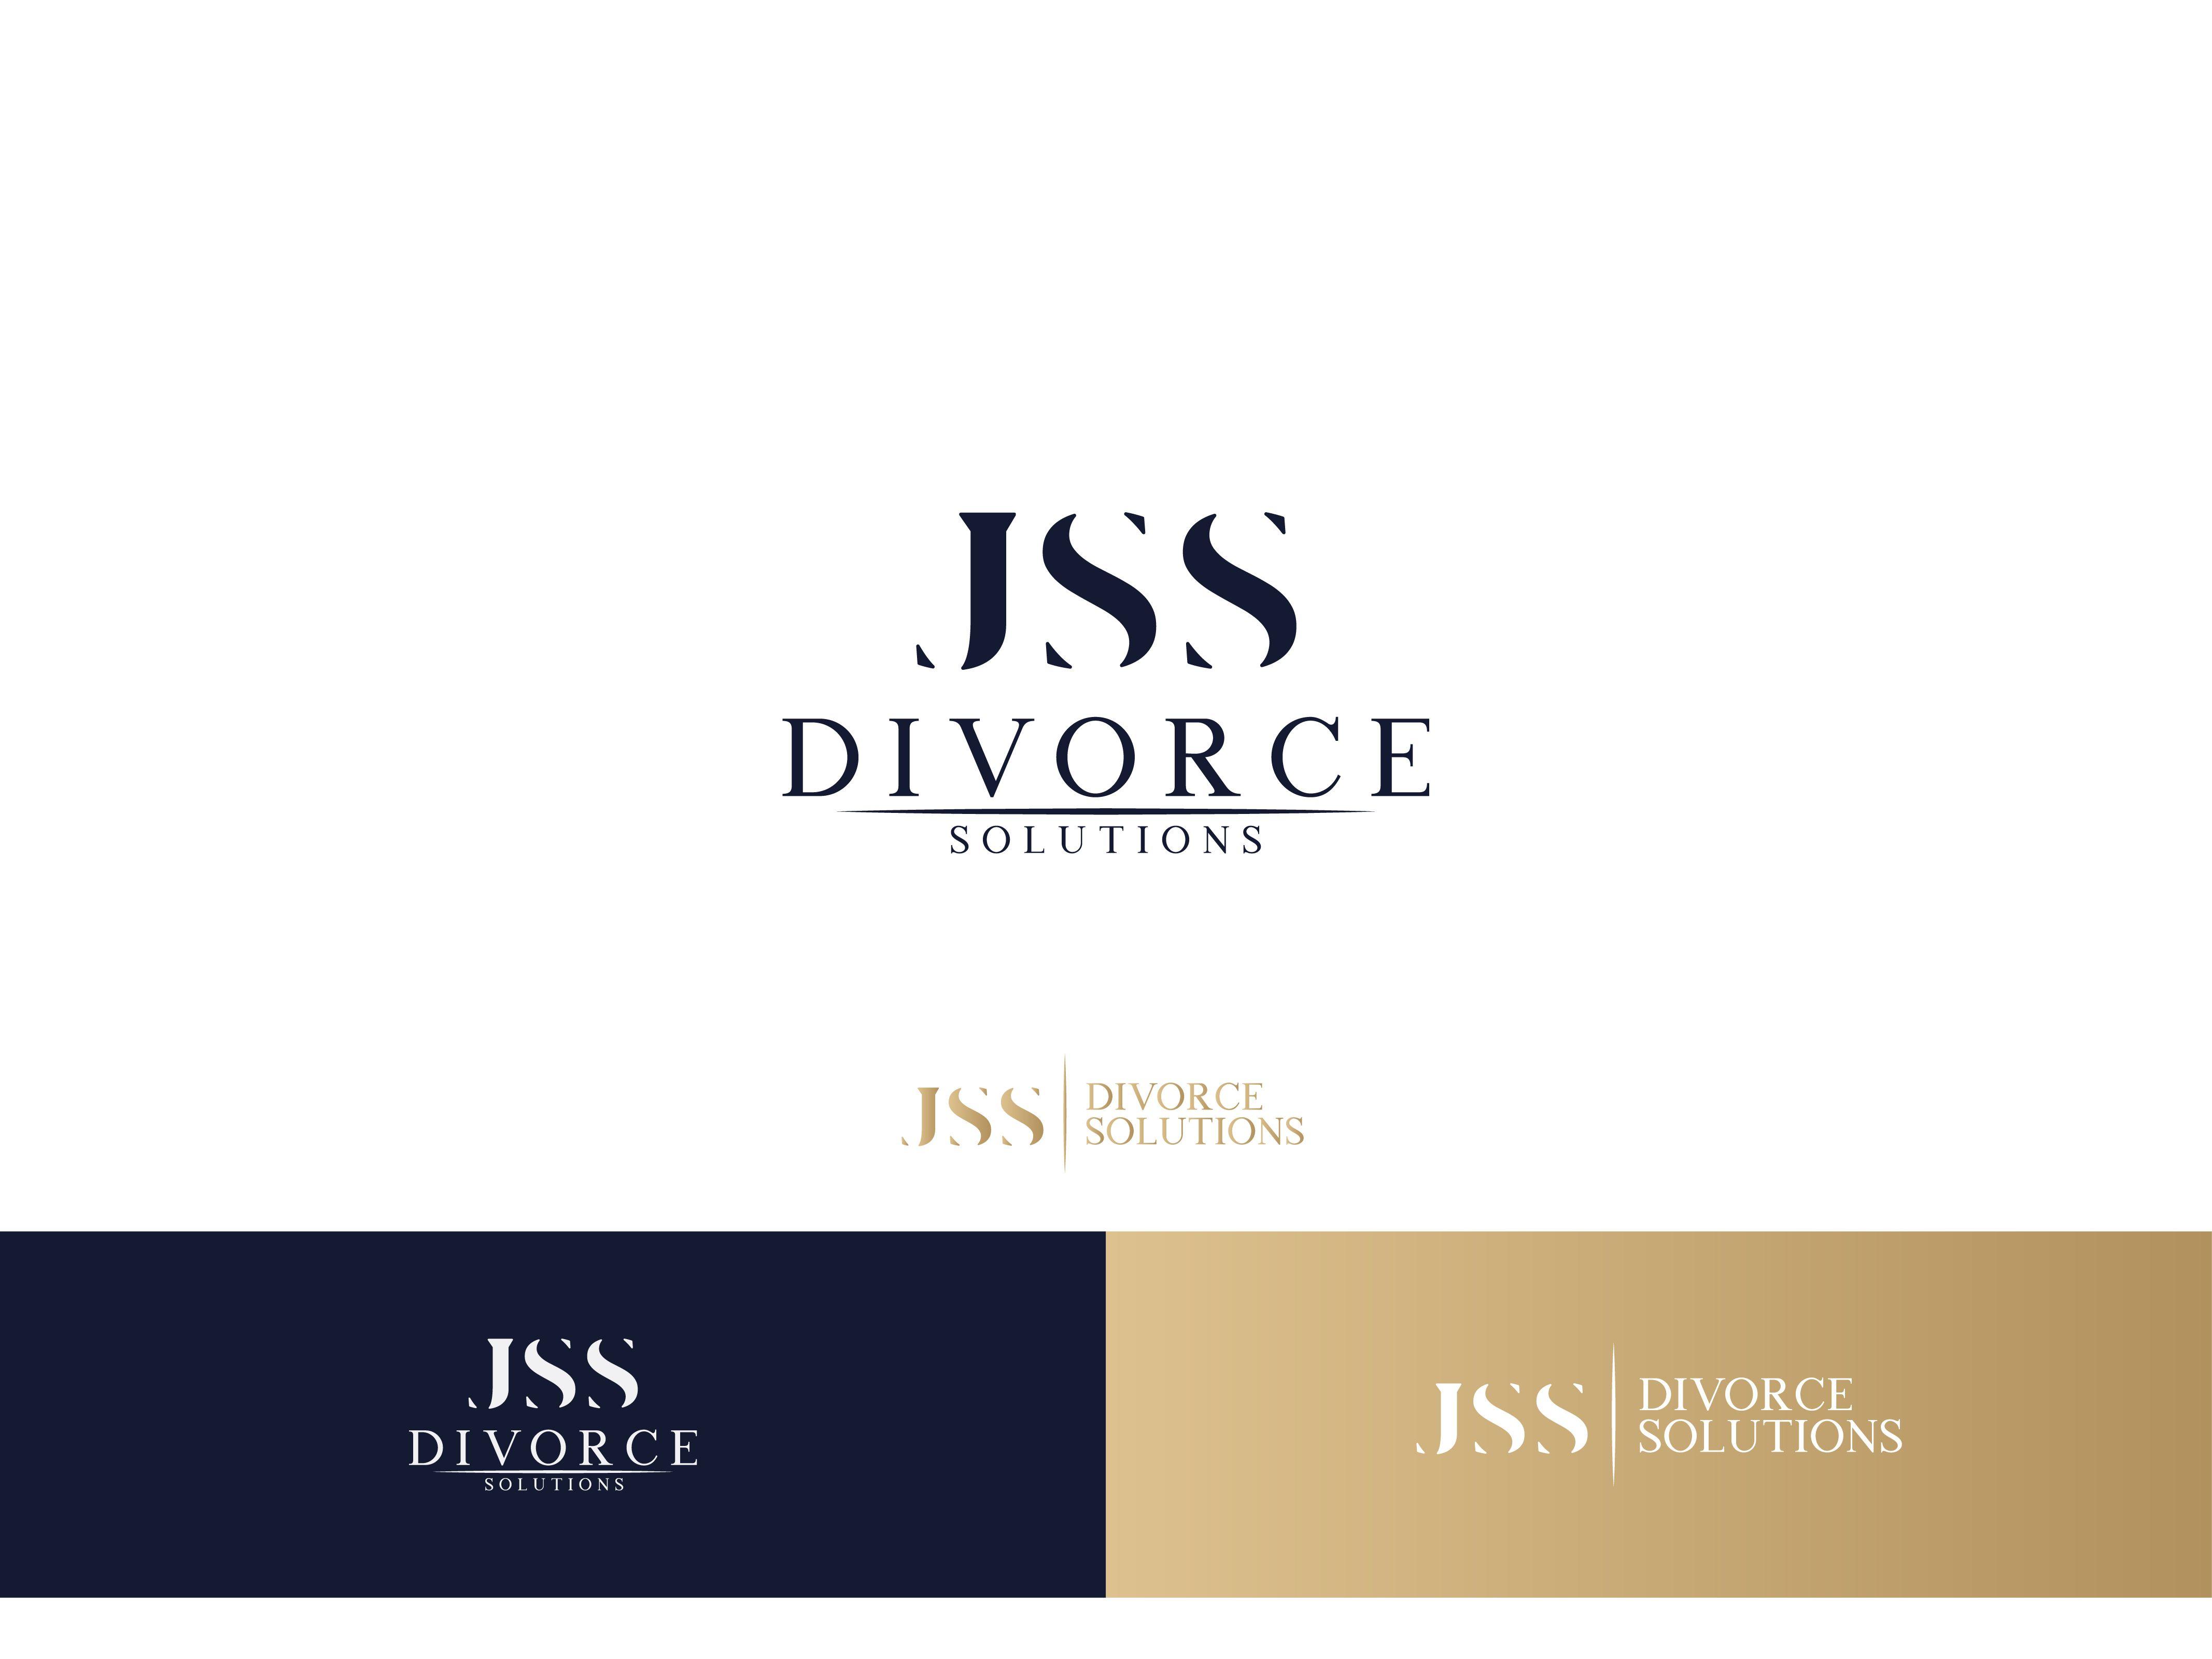 Divorce Logo - Logo Design. 'JSS Divorce Solutions' design project